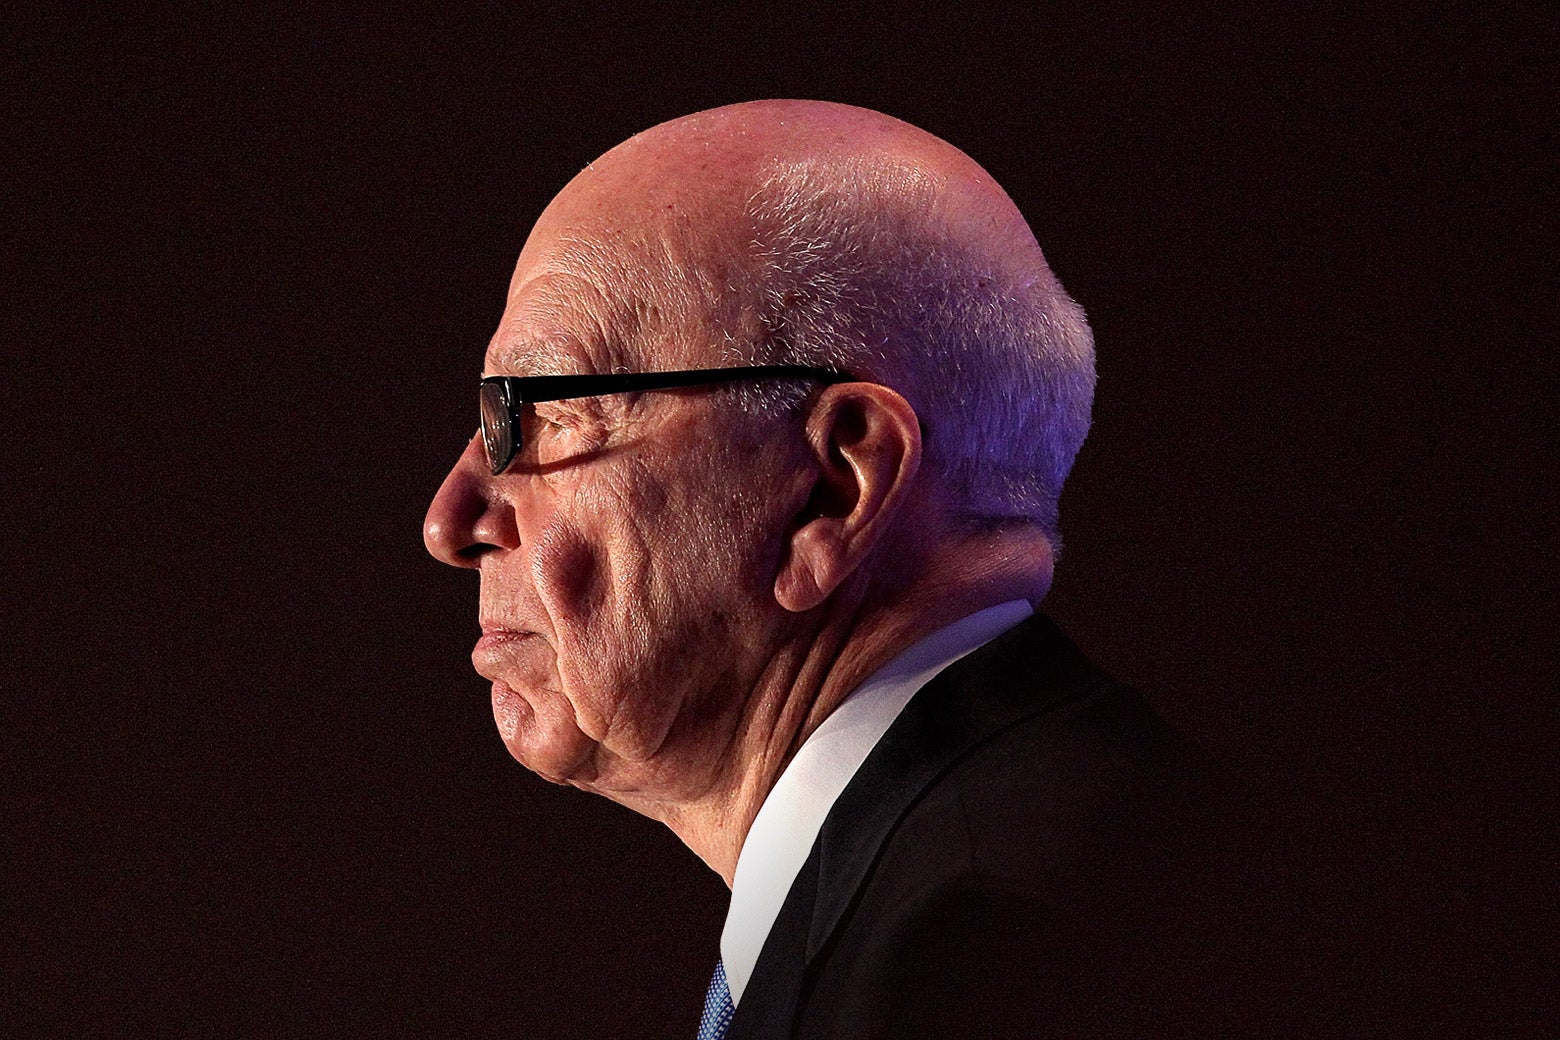 Murdoch in profile.